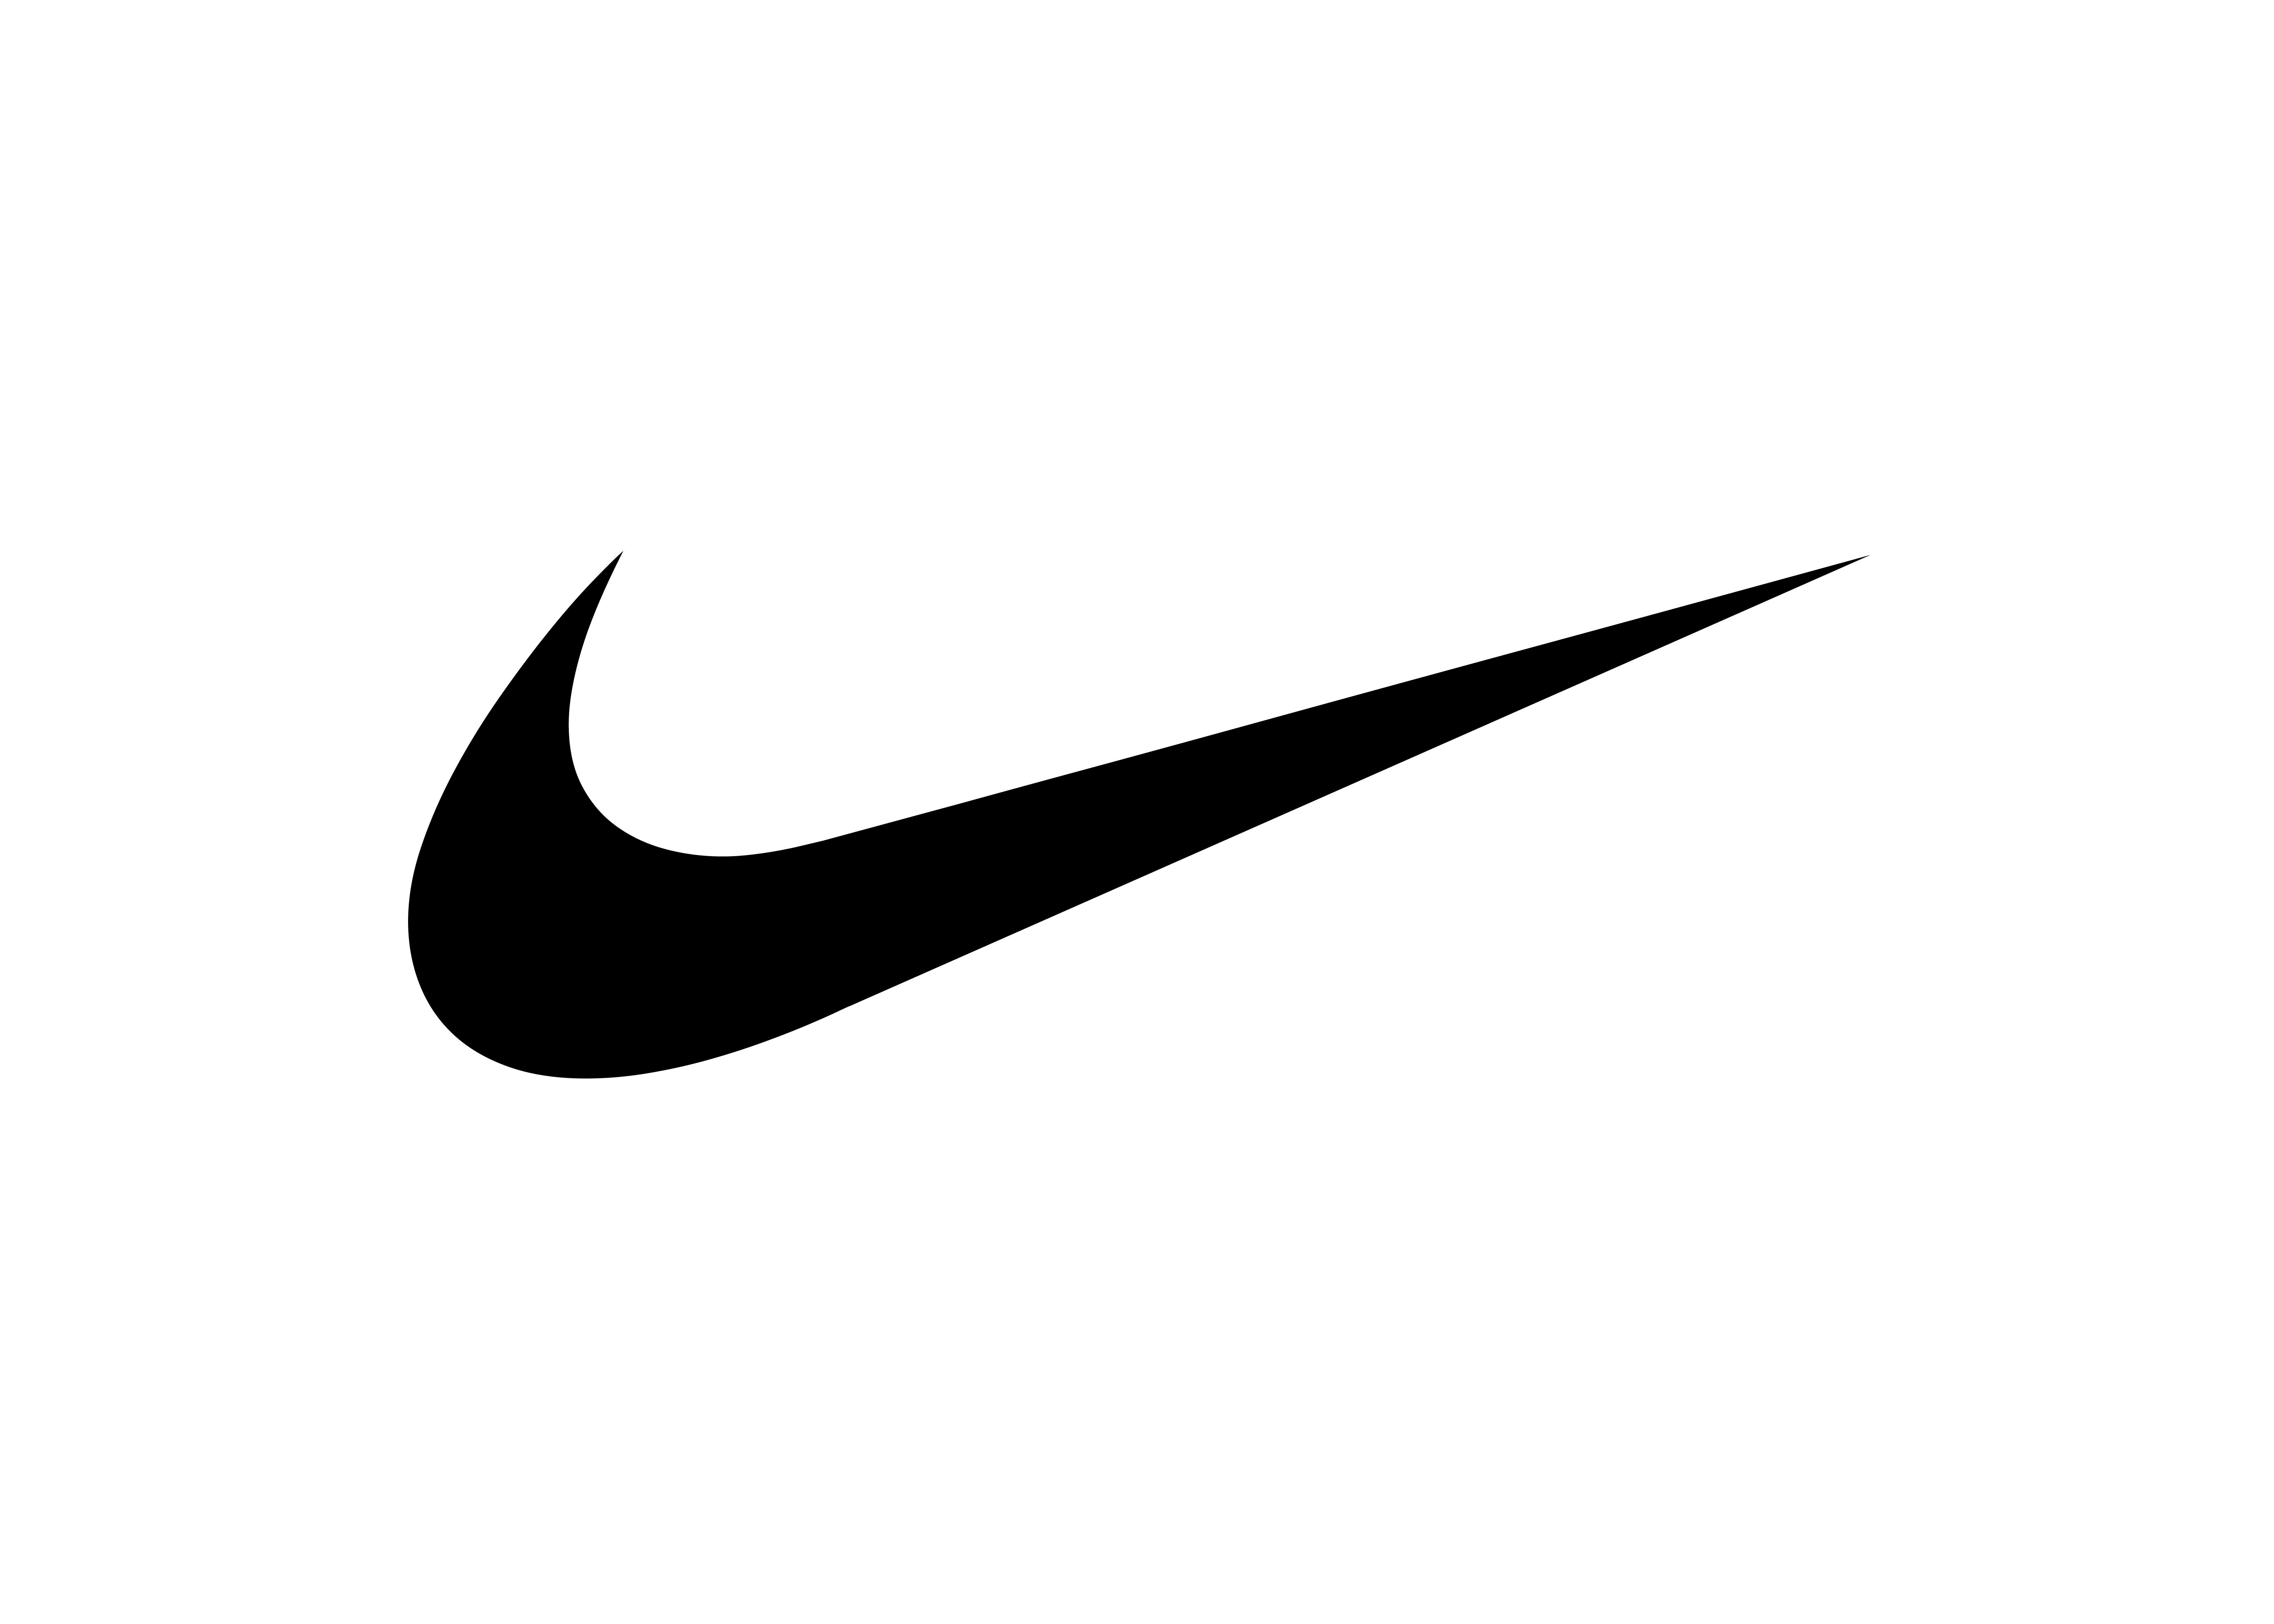 Camo Nike Swoosh Logo - Nike Blazer Mid PRM “Camo Swoosh” | THE DROP